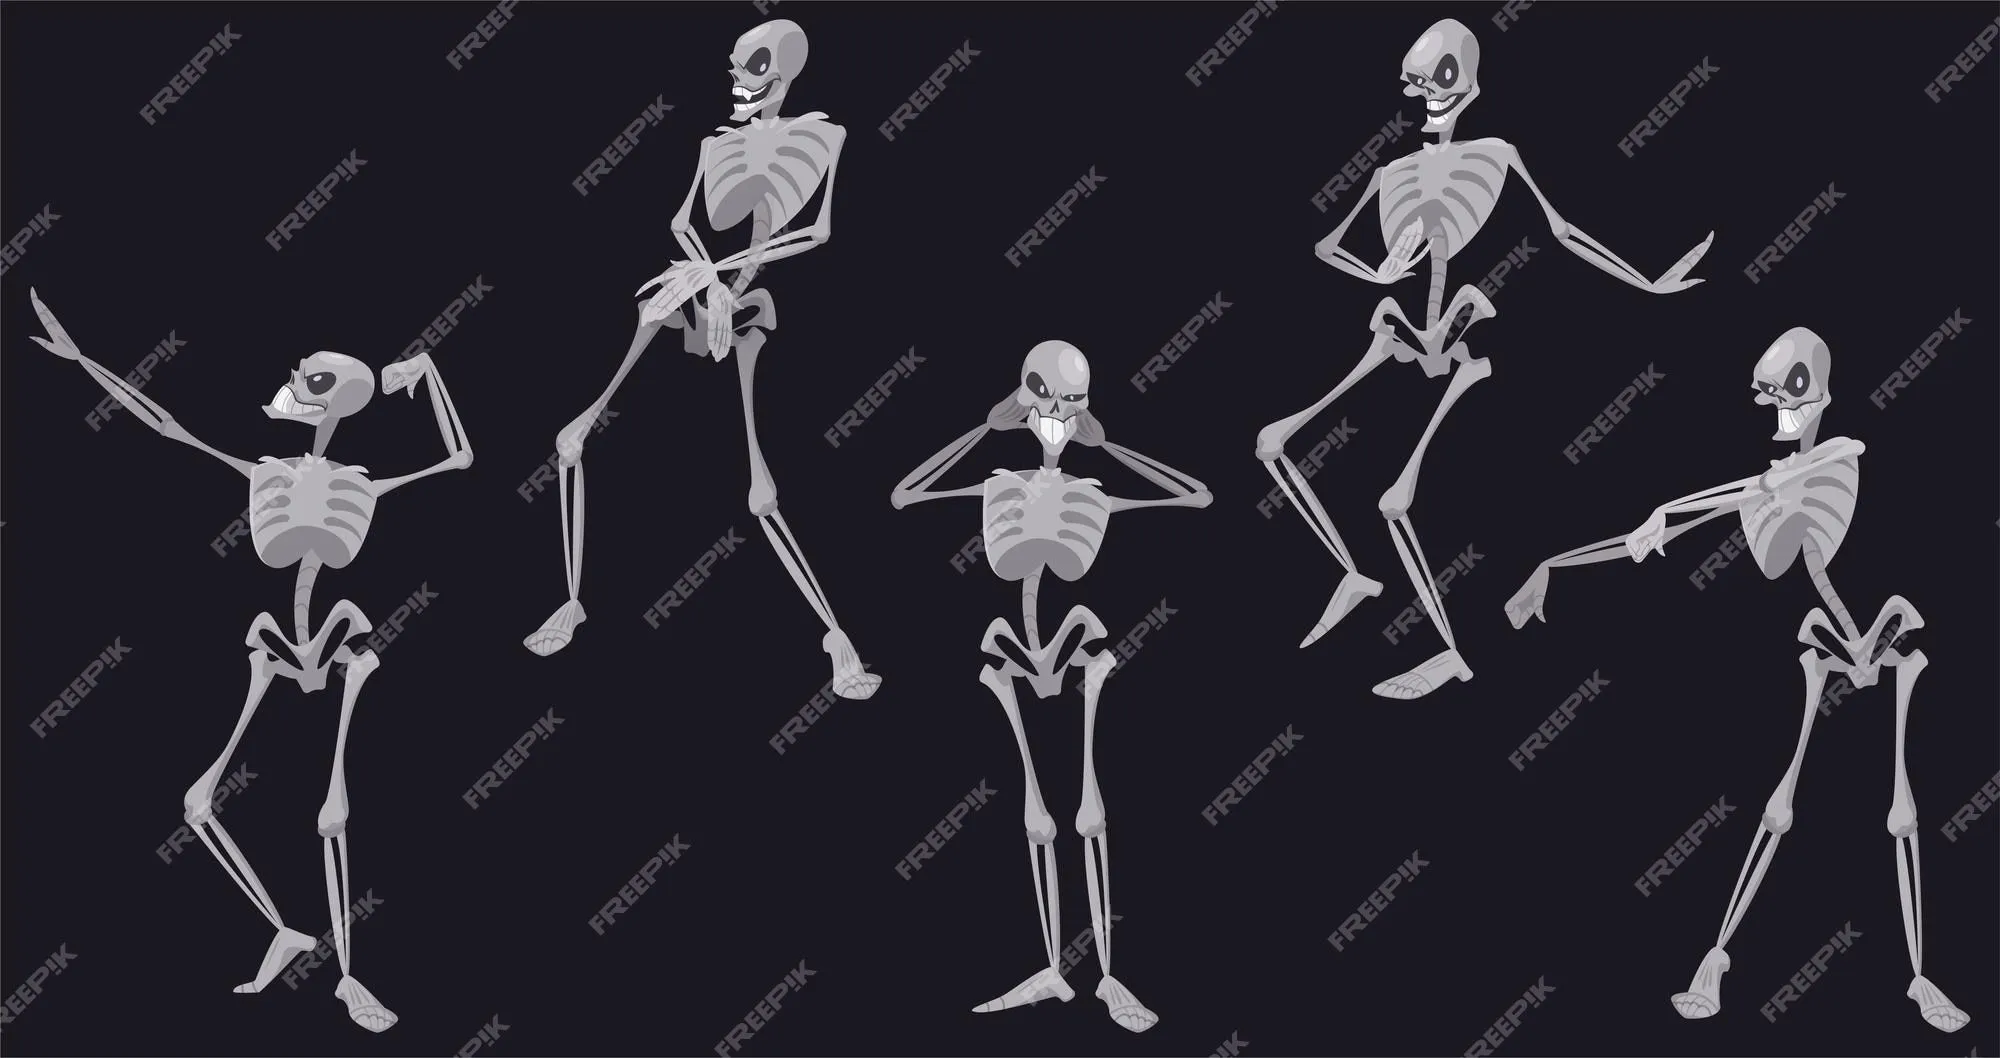 Baile de esqueletos, divertidos personajes muertos de halloween o mexicano  dia de los muertos bailando, calaveras y huesos moviendo el cuerpo al ritmo  de la música, fiesta disco, ilustración vectorial de dibujos